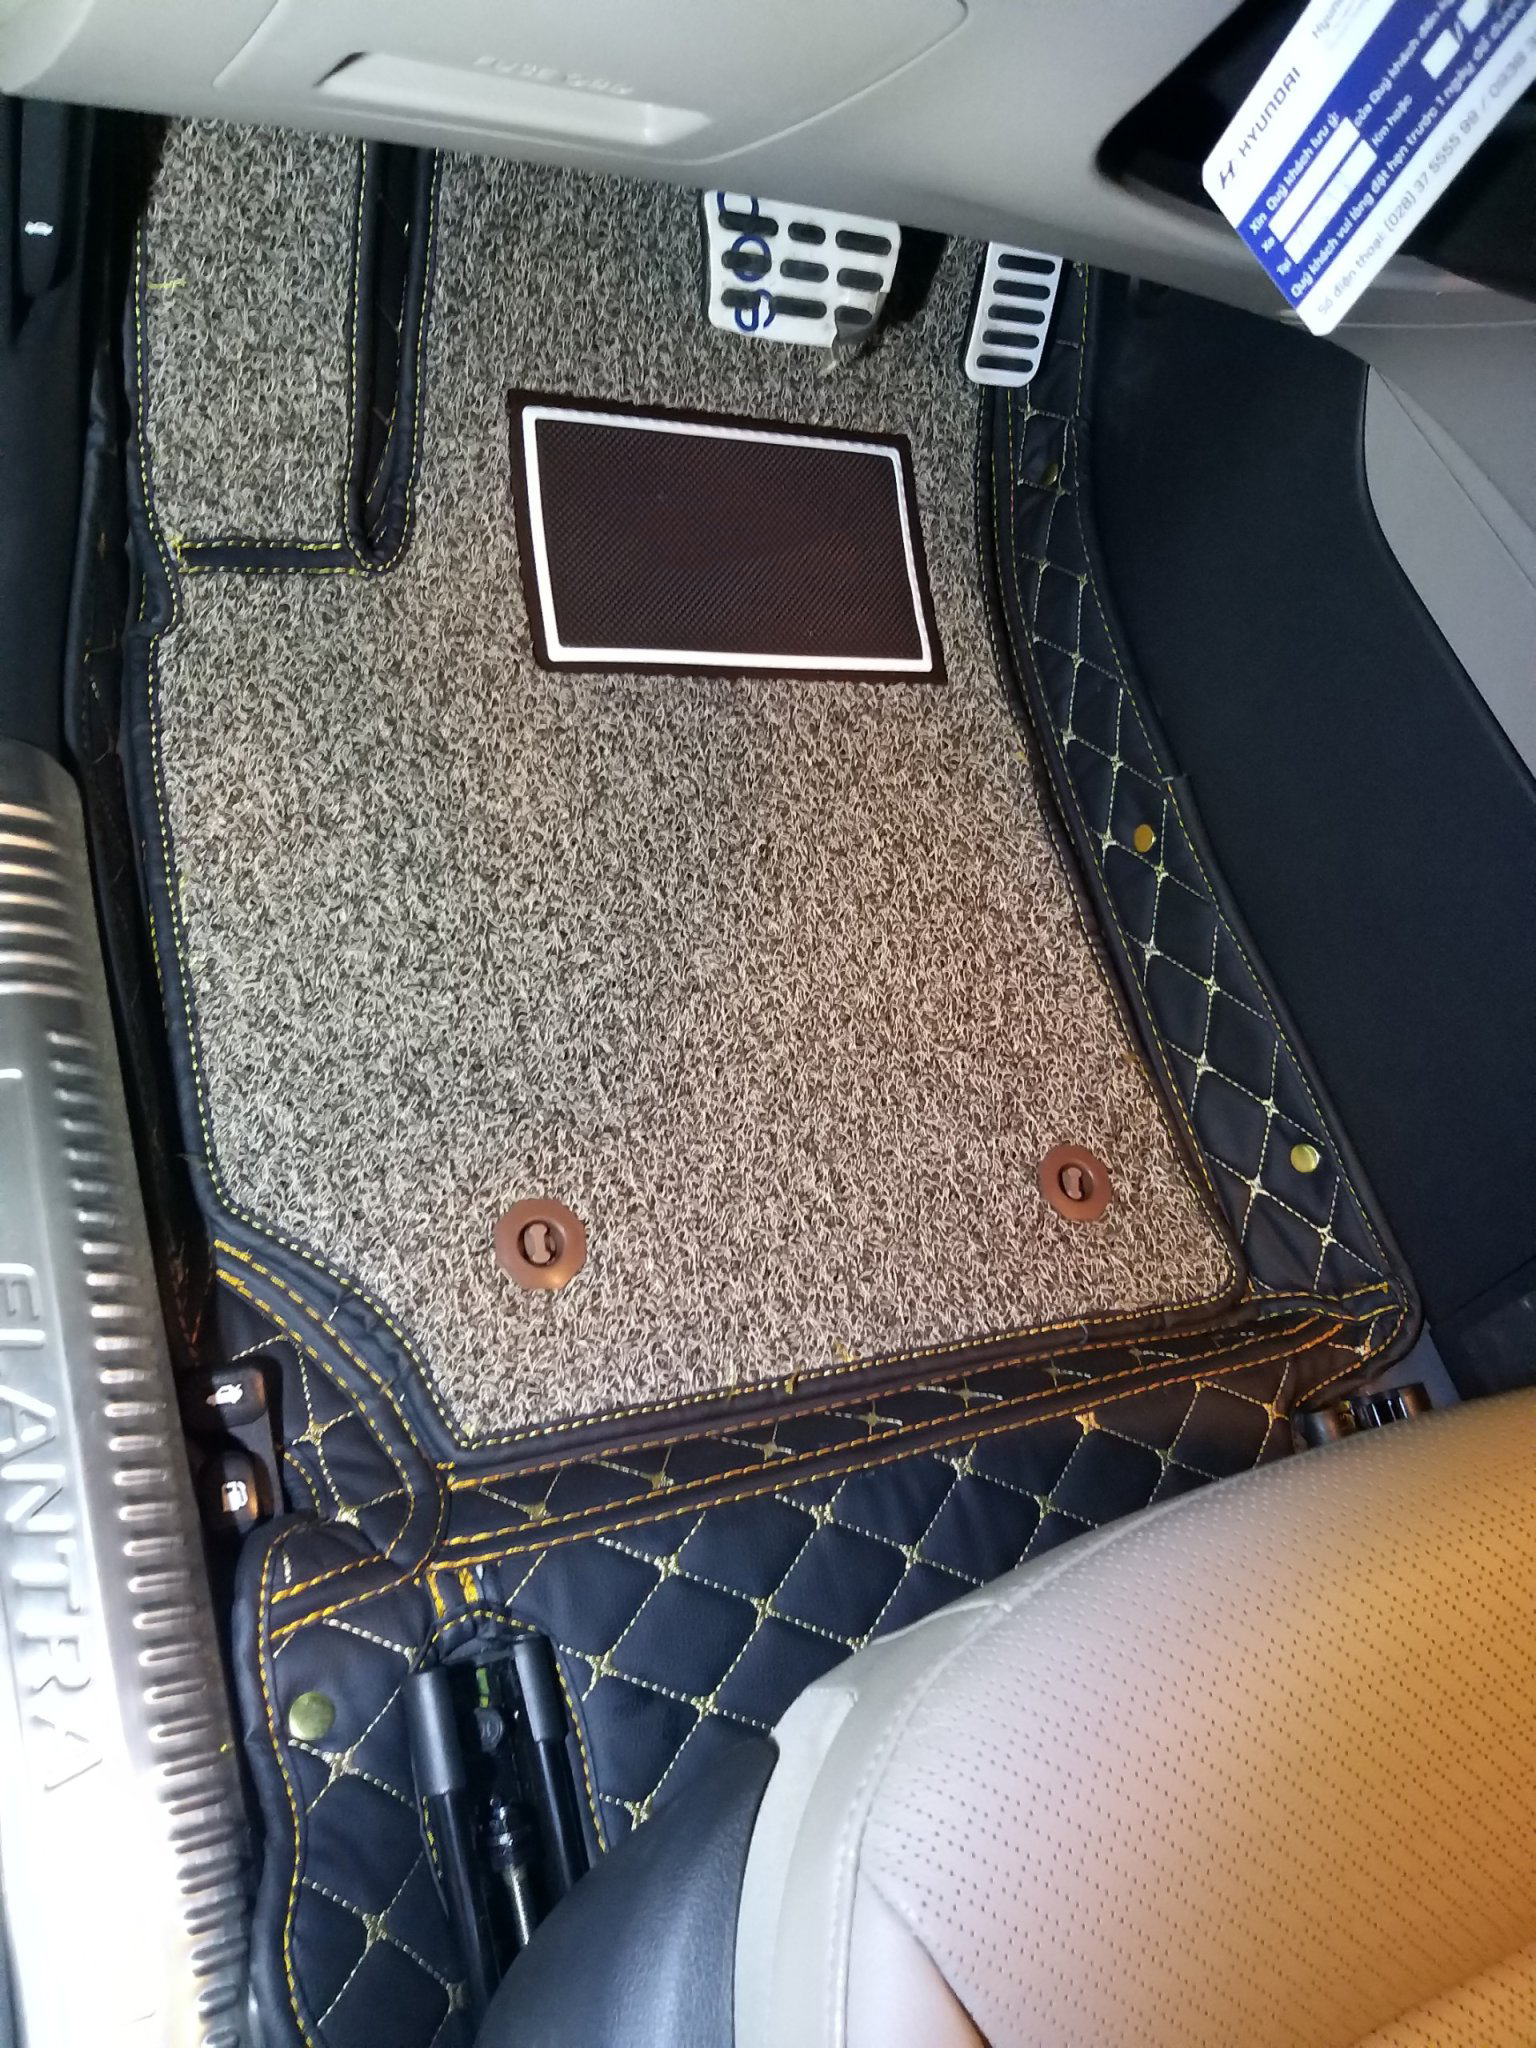 Thảm sàn ô tô 6D dành cho xe Hyundai Elantra 2019 da Thường màu T1.3 + R5 hình ảnh thật chụp bằng điện thoại không chỉnh sửa có video hướng dẫn lắp đặt tại nhà